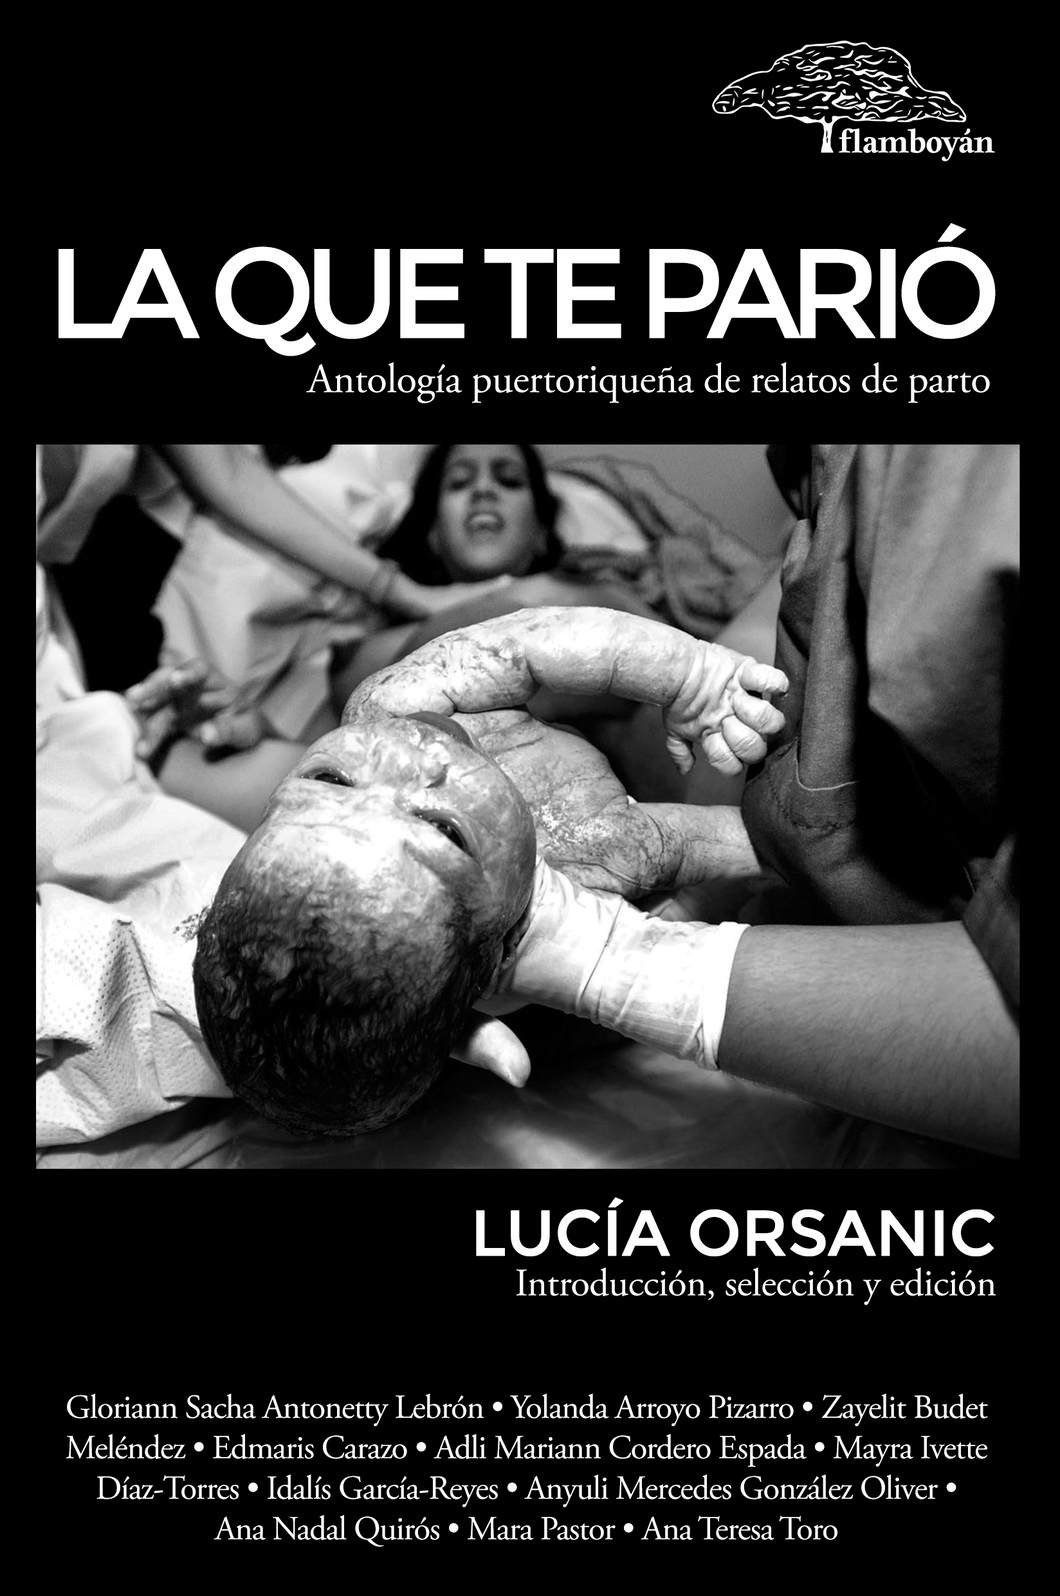 La que te parió. Antología puertorriqueña de relatos de parto: Lucía Orsanic (Ed.)